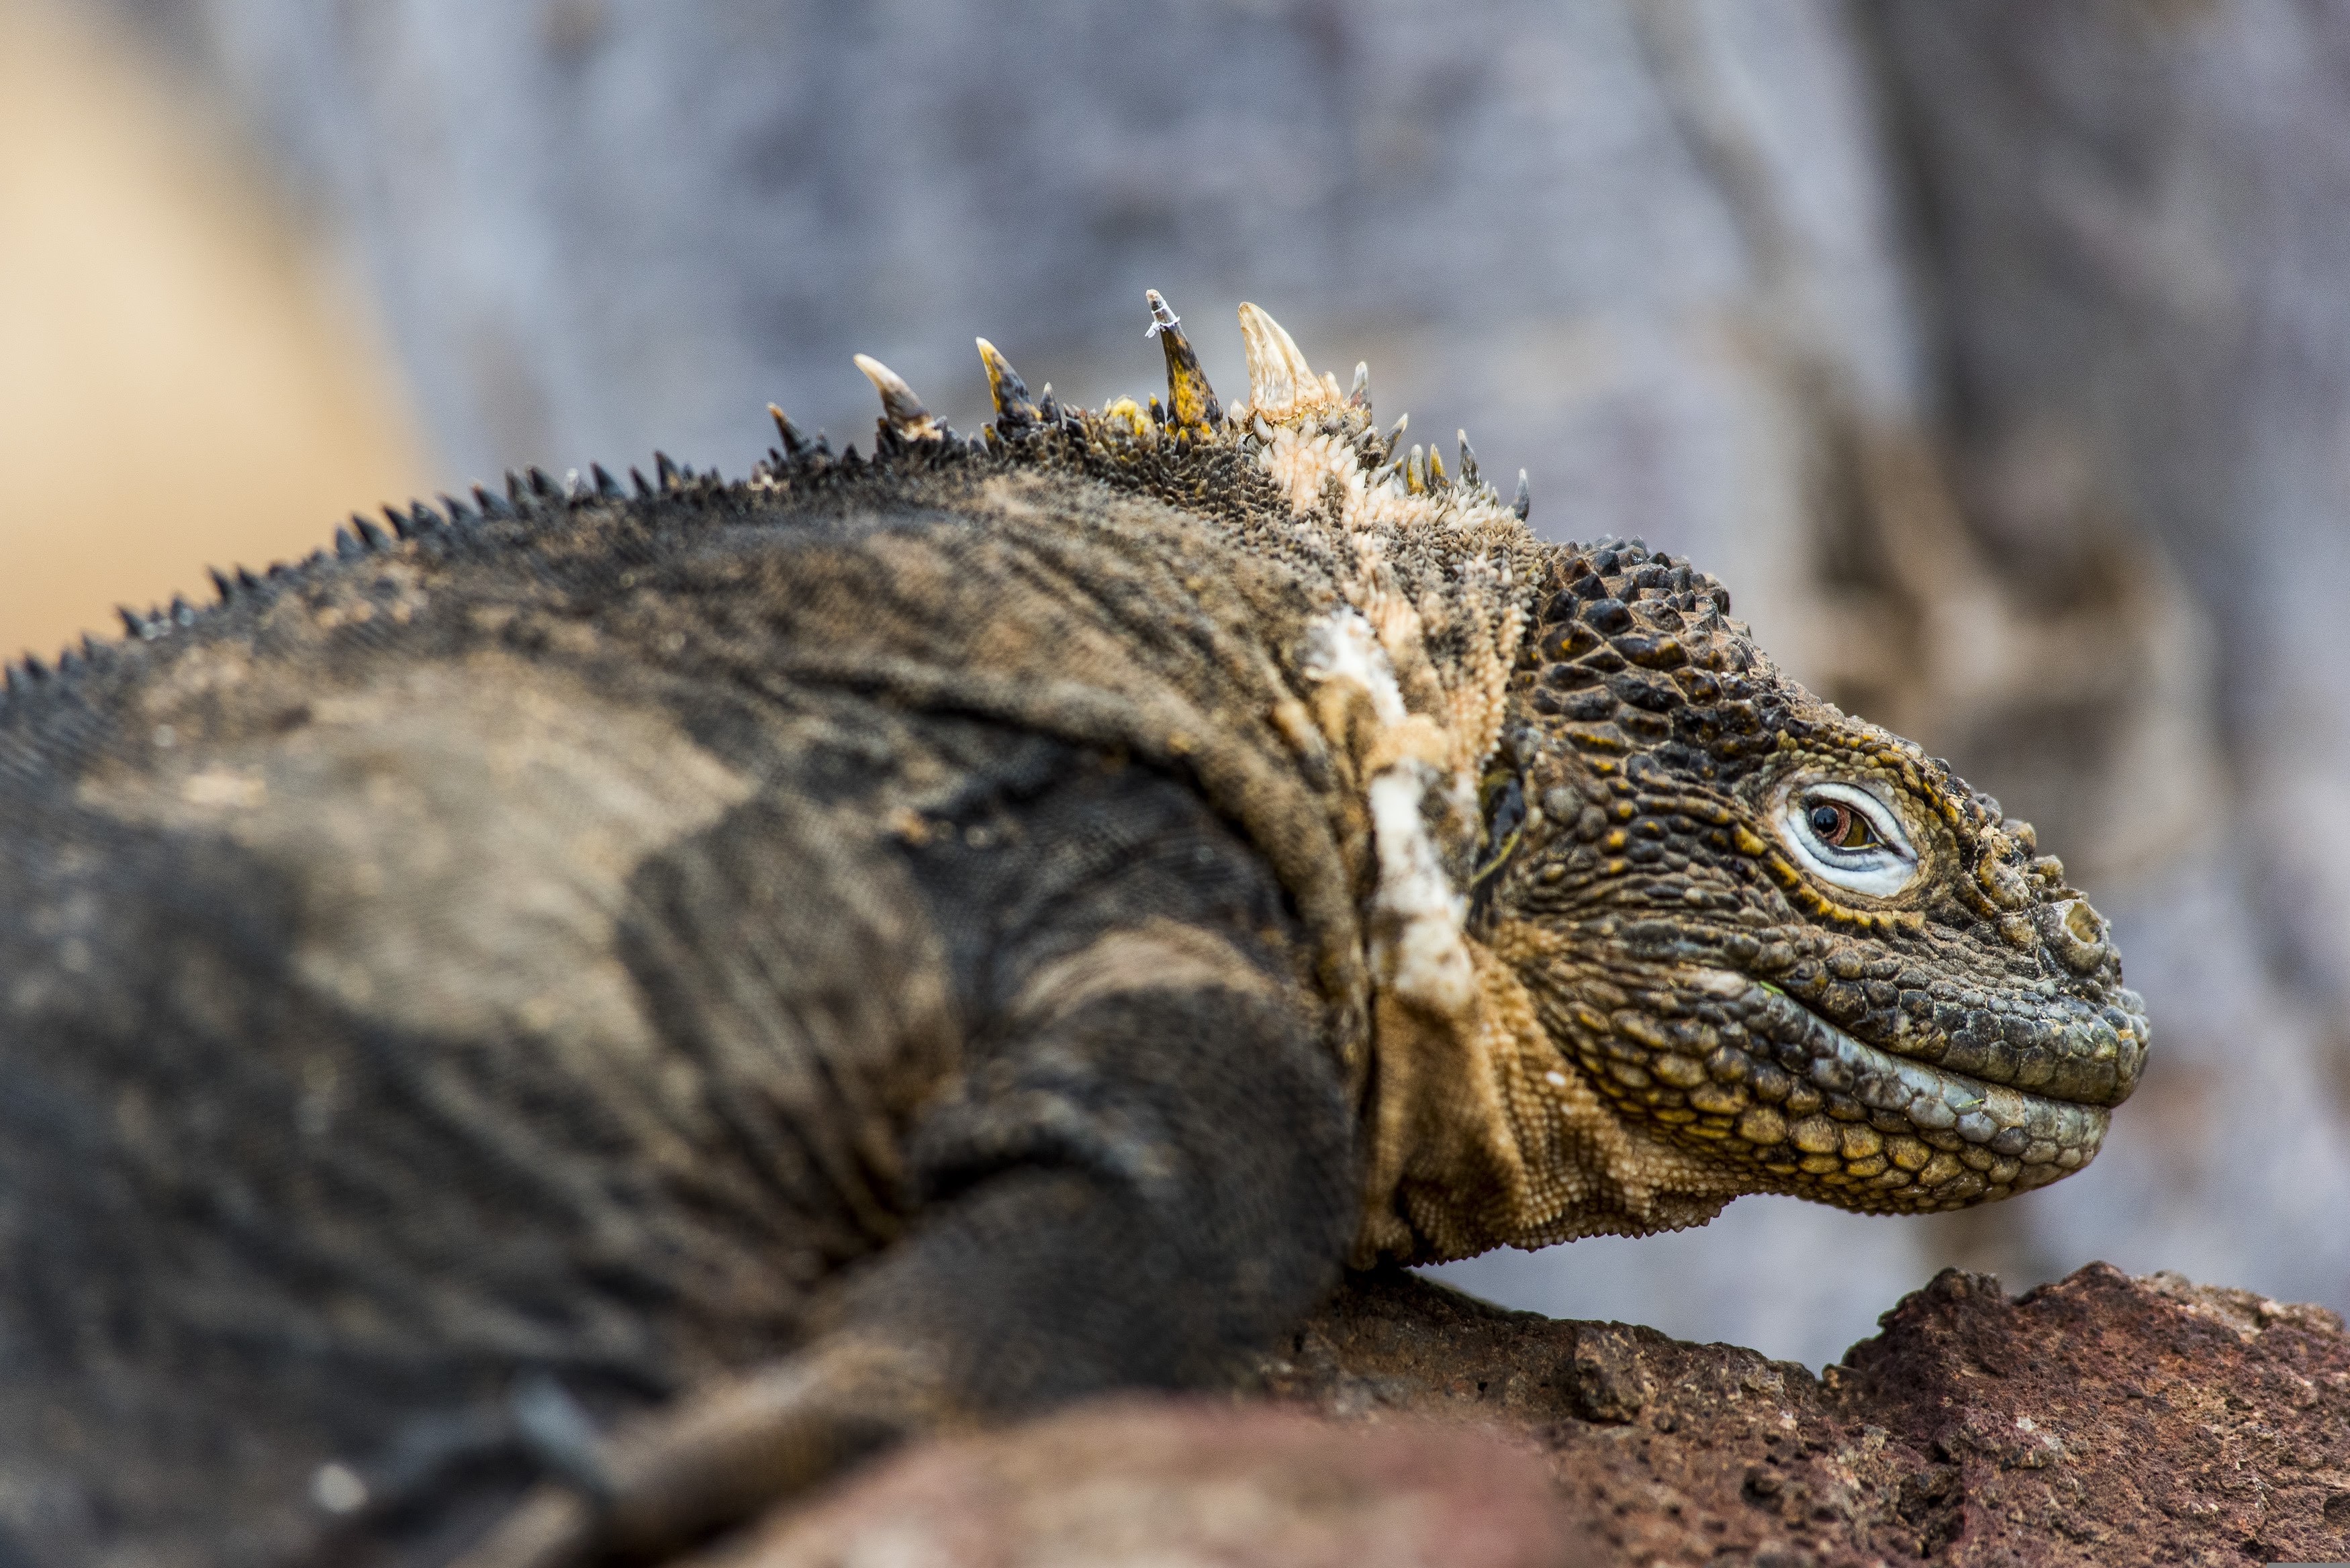 Csodás lények a Galápagos-szigeteken: mesebeli teknősök, sárkányszerű leguánok és Darwin pintyei